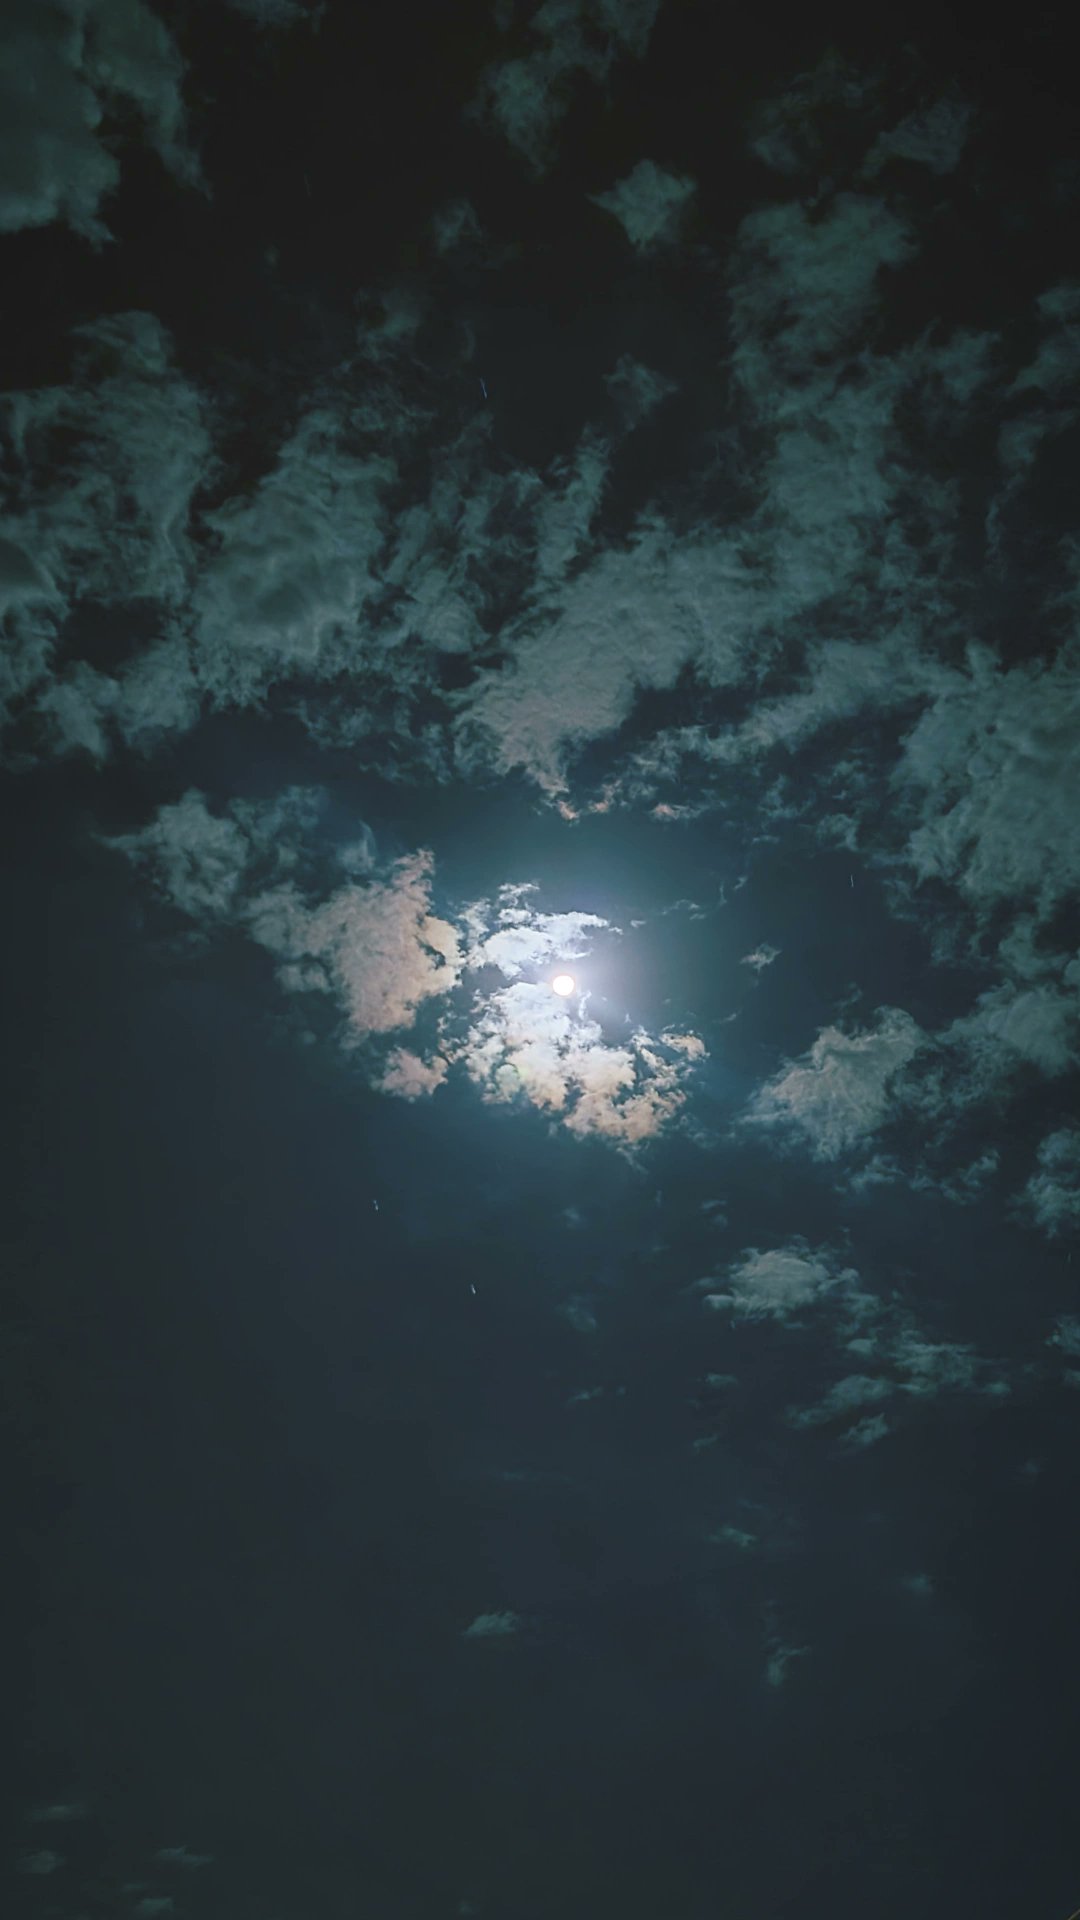 عتمة ظاهر، القمر يغيب في مابان الصبح في طلّت الليل مثل وغيرك وقتُ صَلاةِ